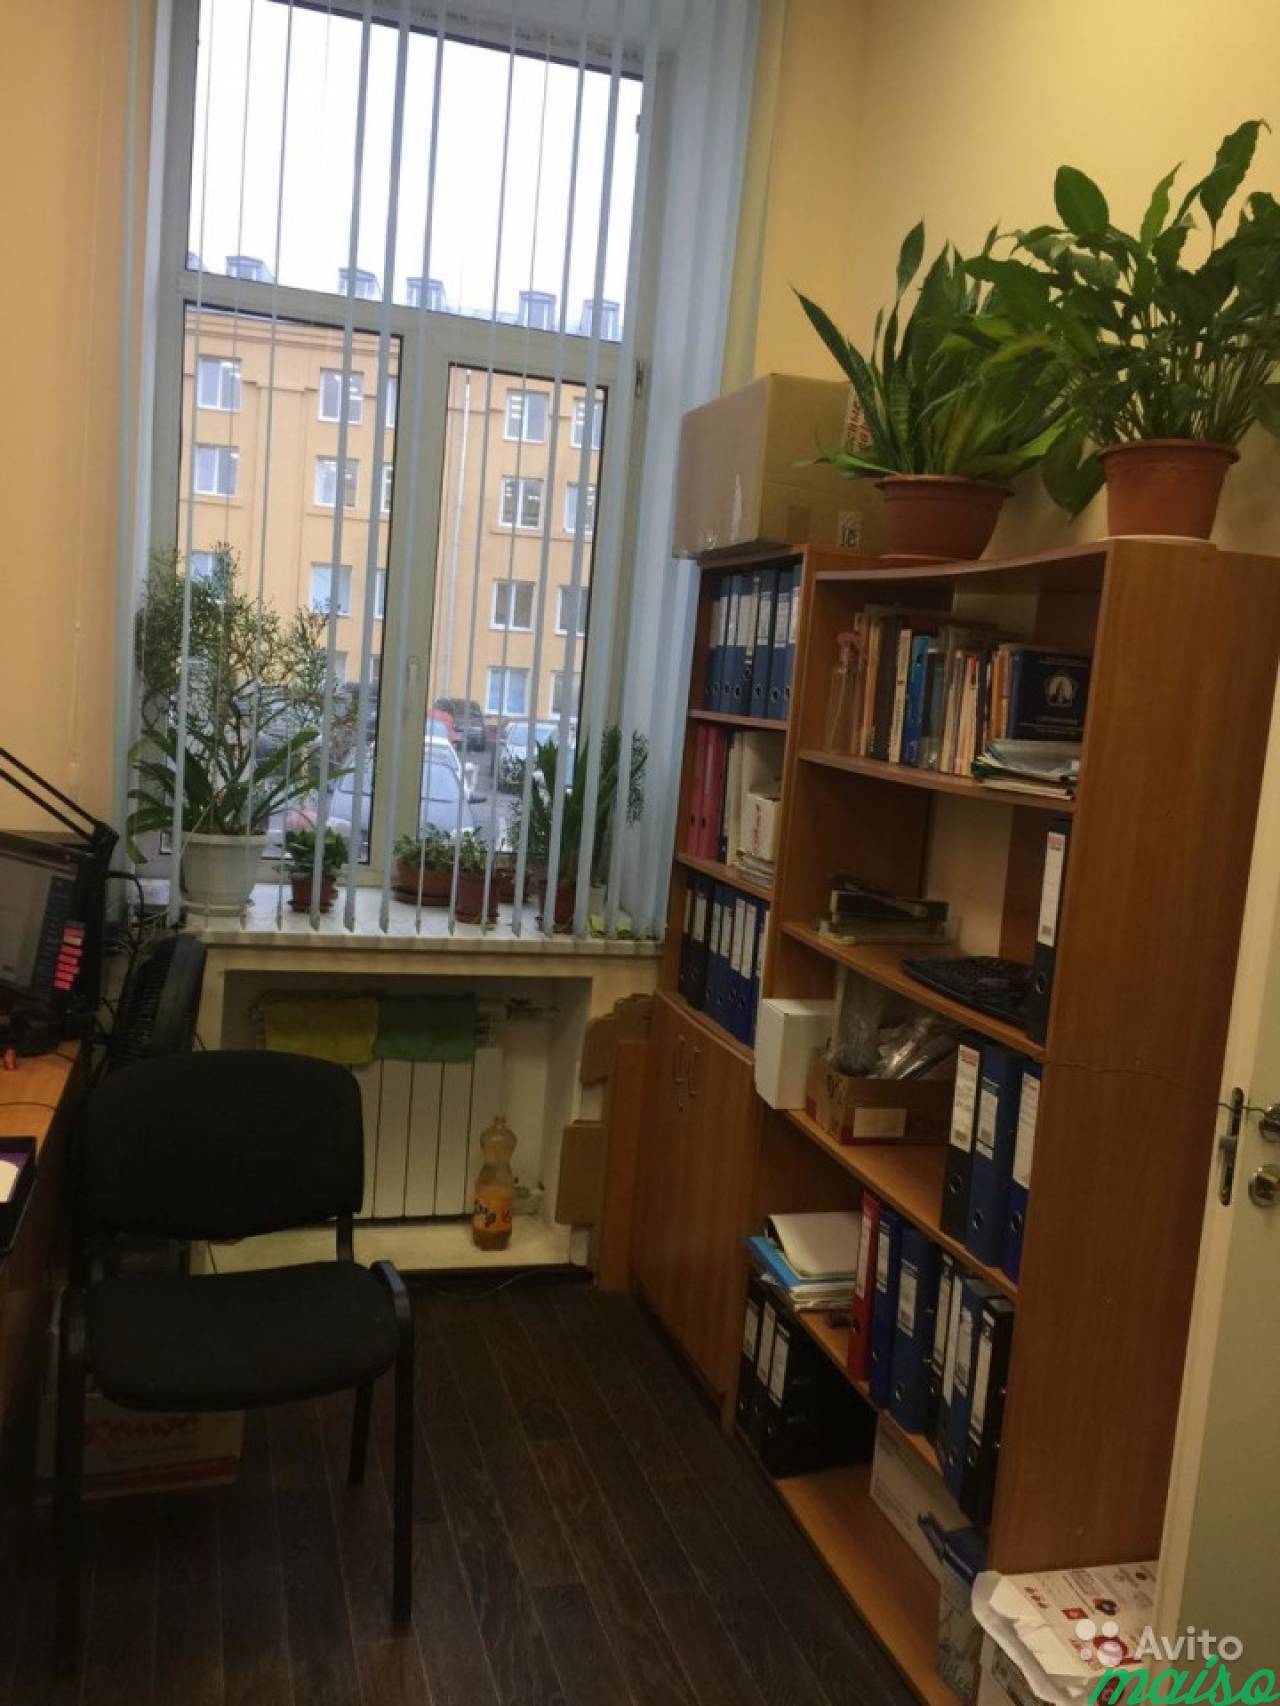 Офис, 26 м² адрес и уборка включены в Санкт-Петербурге. Фото 1